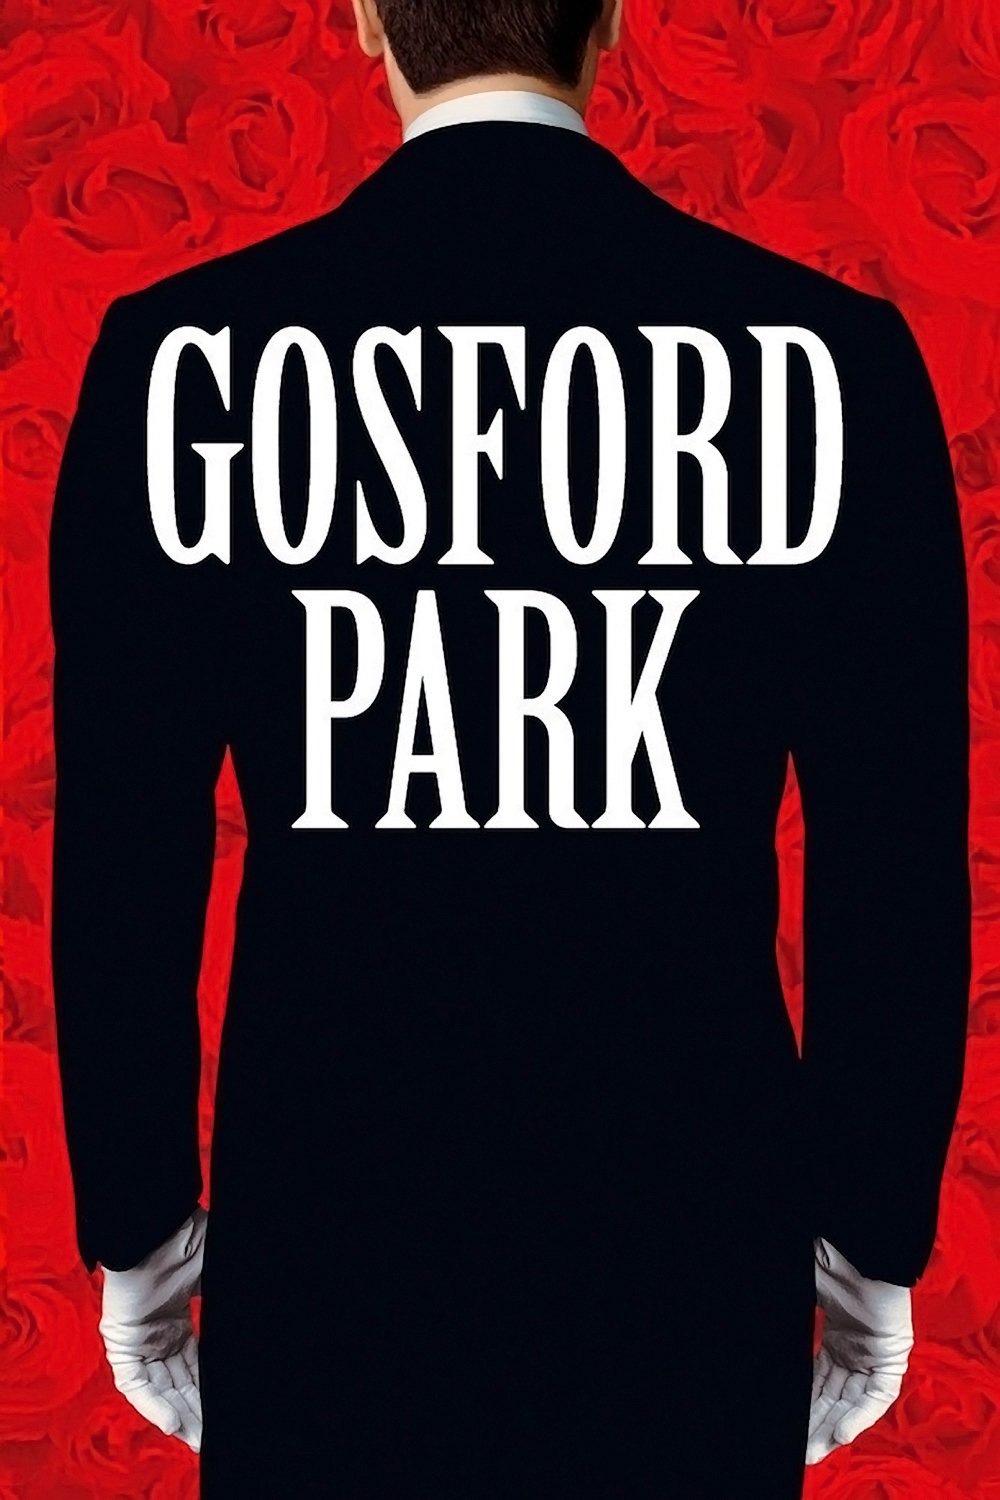 Plakat von "Gosford Park"